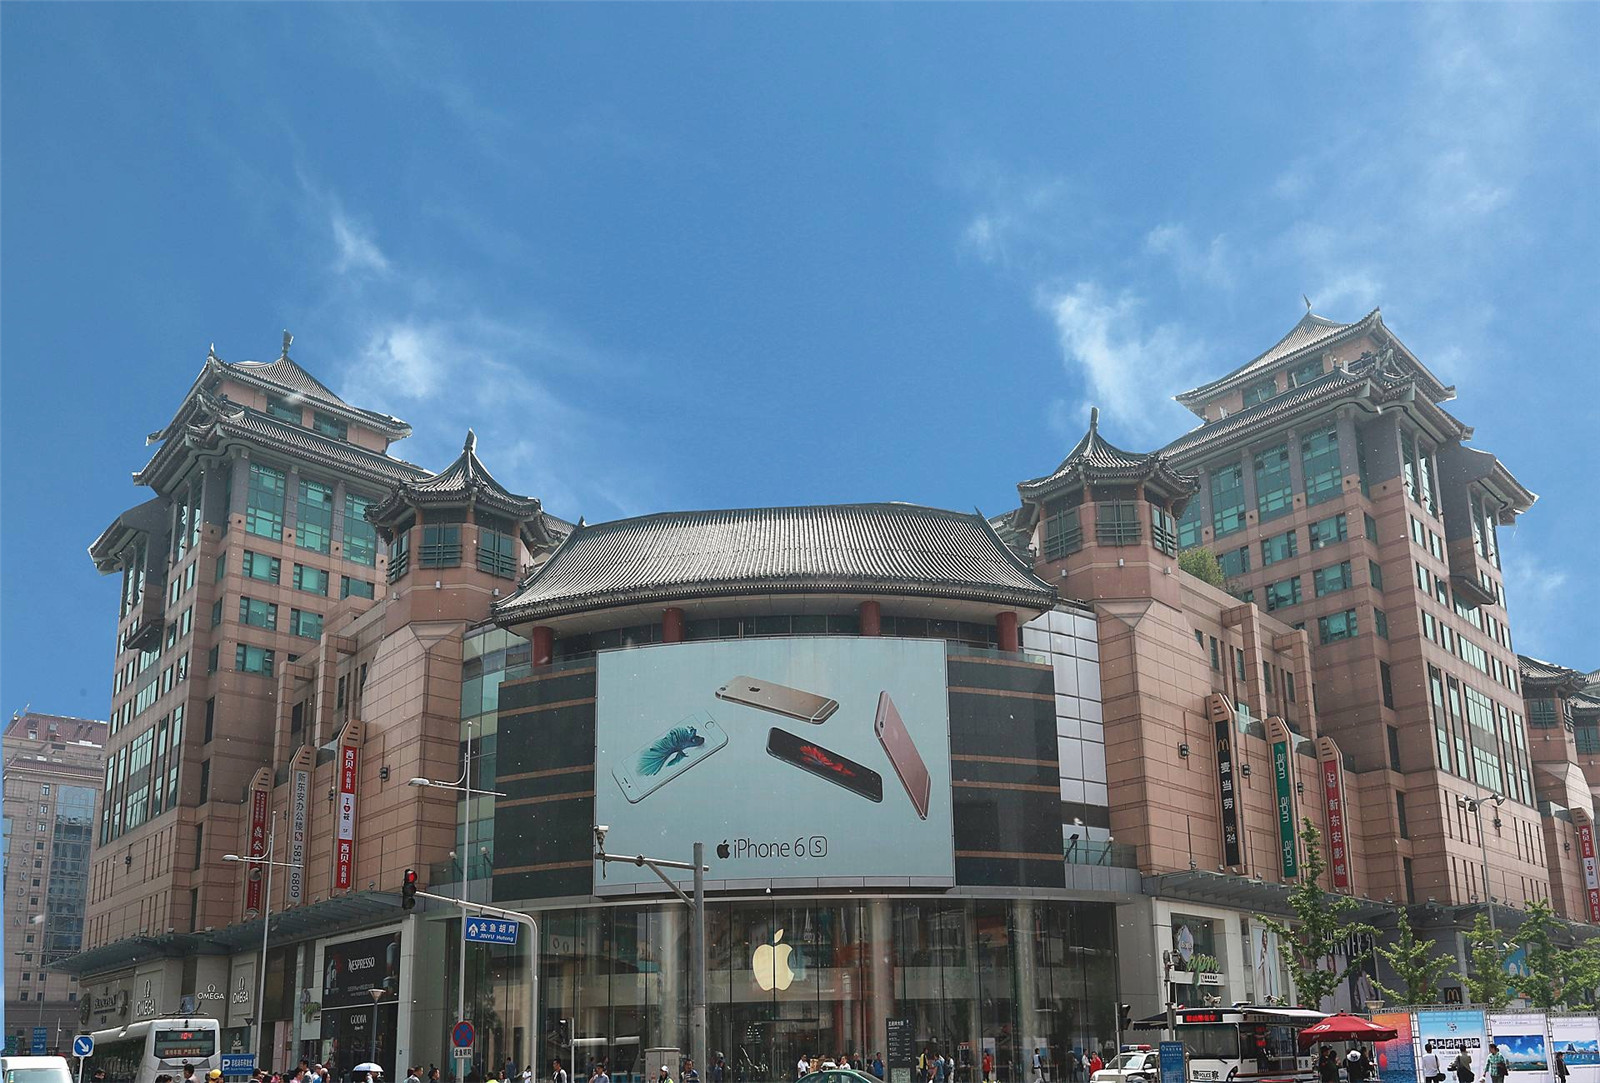 上海罗宾森购物广场图片